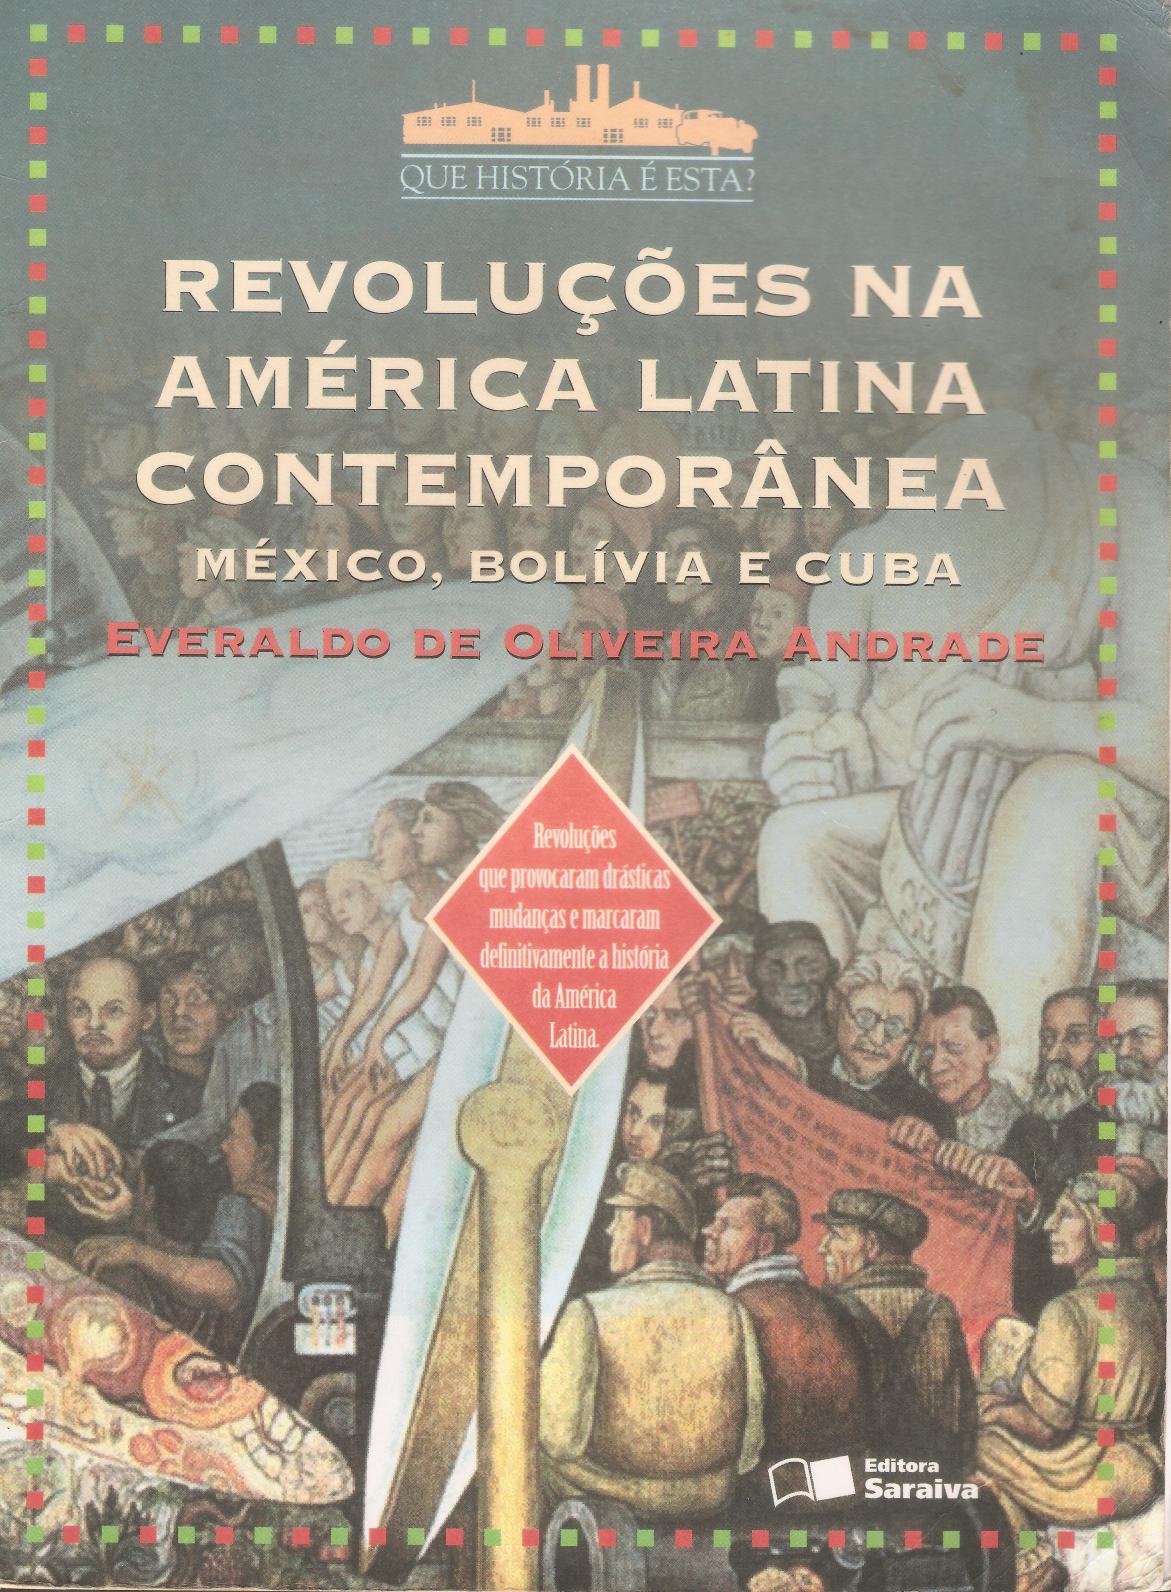 Revoluções na América Ltina Contemporânea: México, Bolívia e Cuba